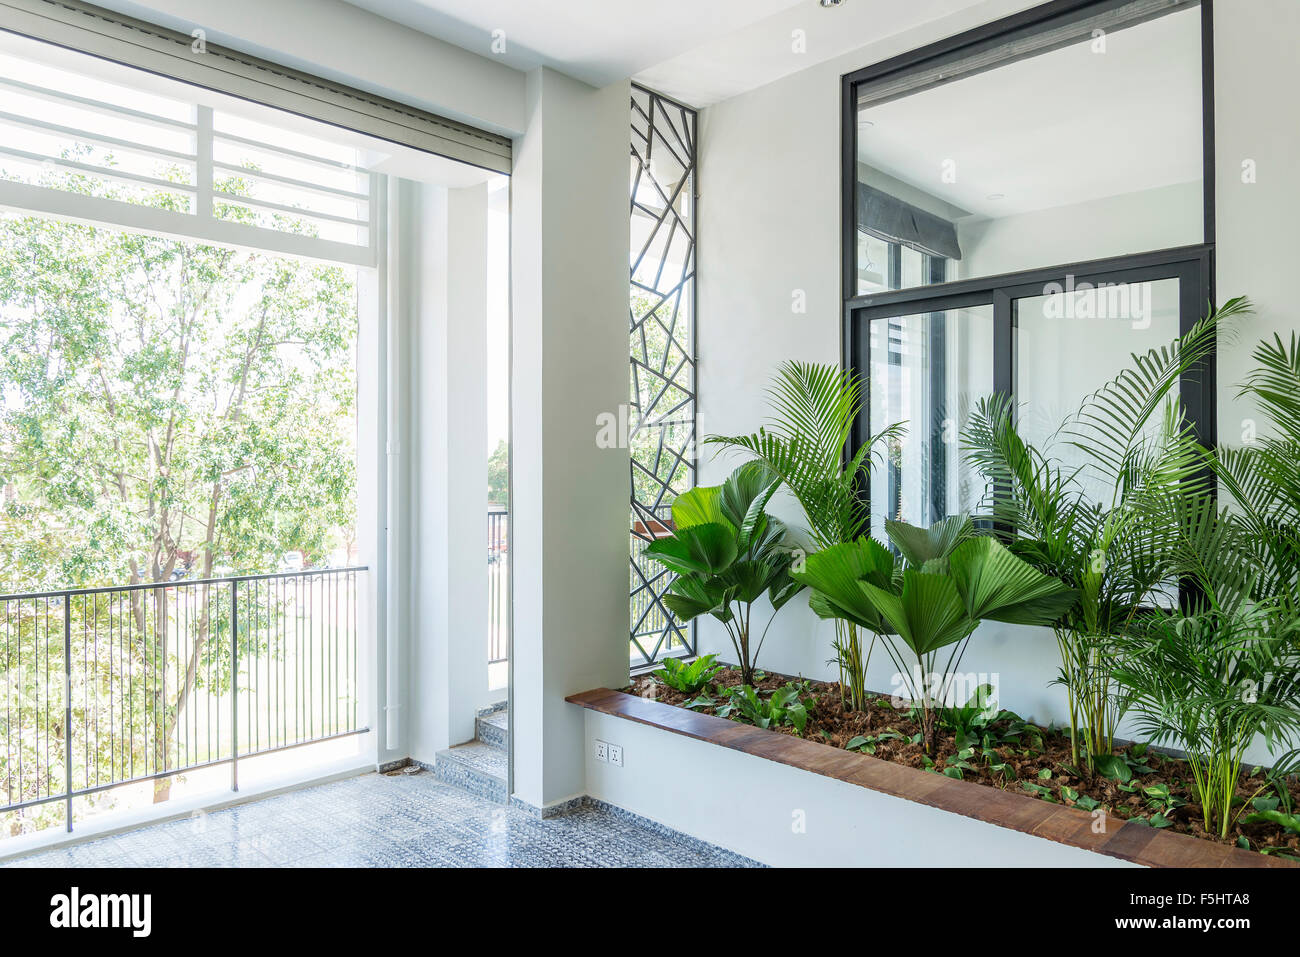 modern contemporary interior design balcony garden plants Stock Photo